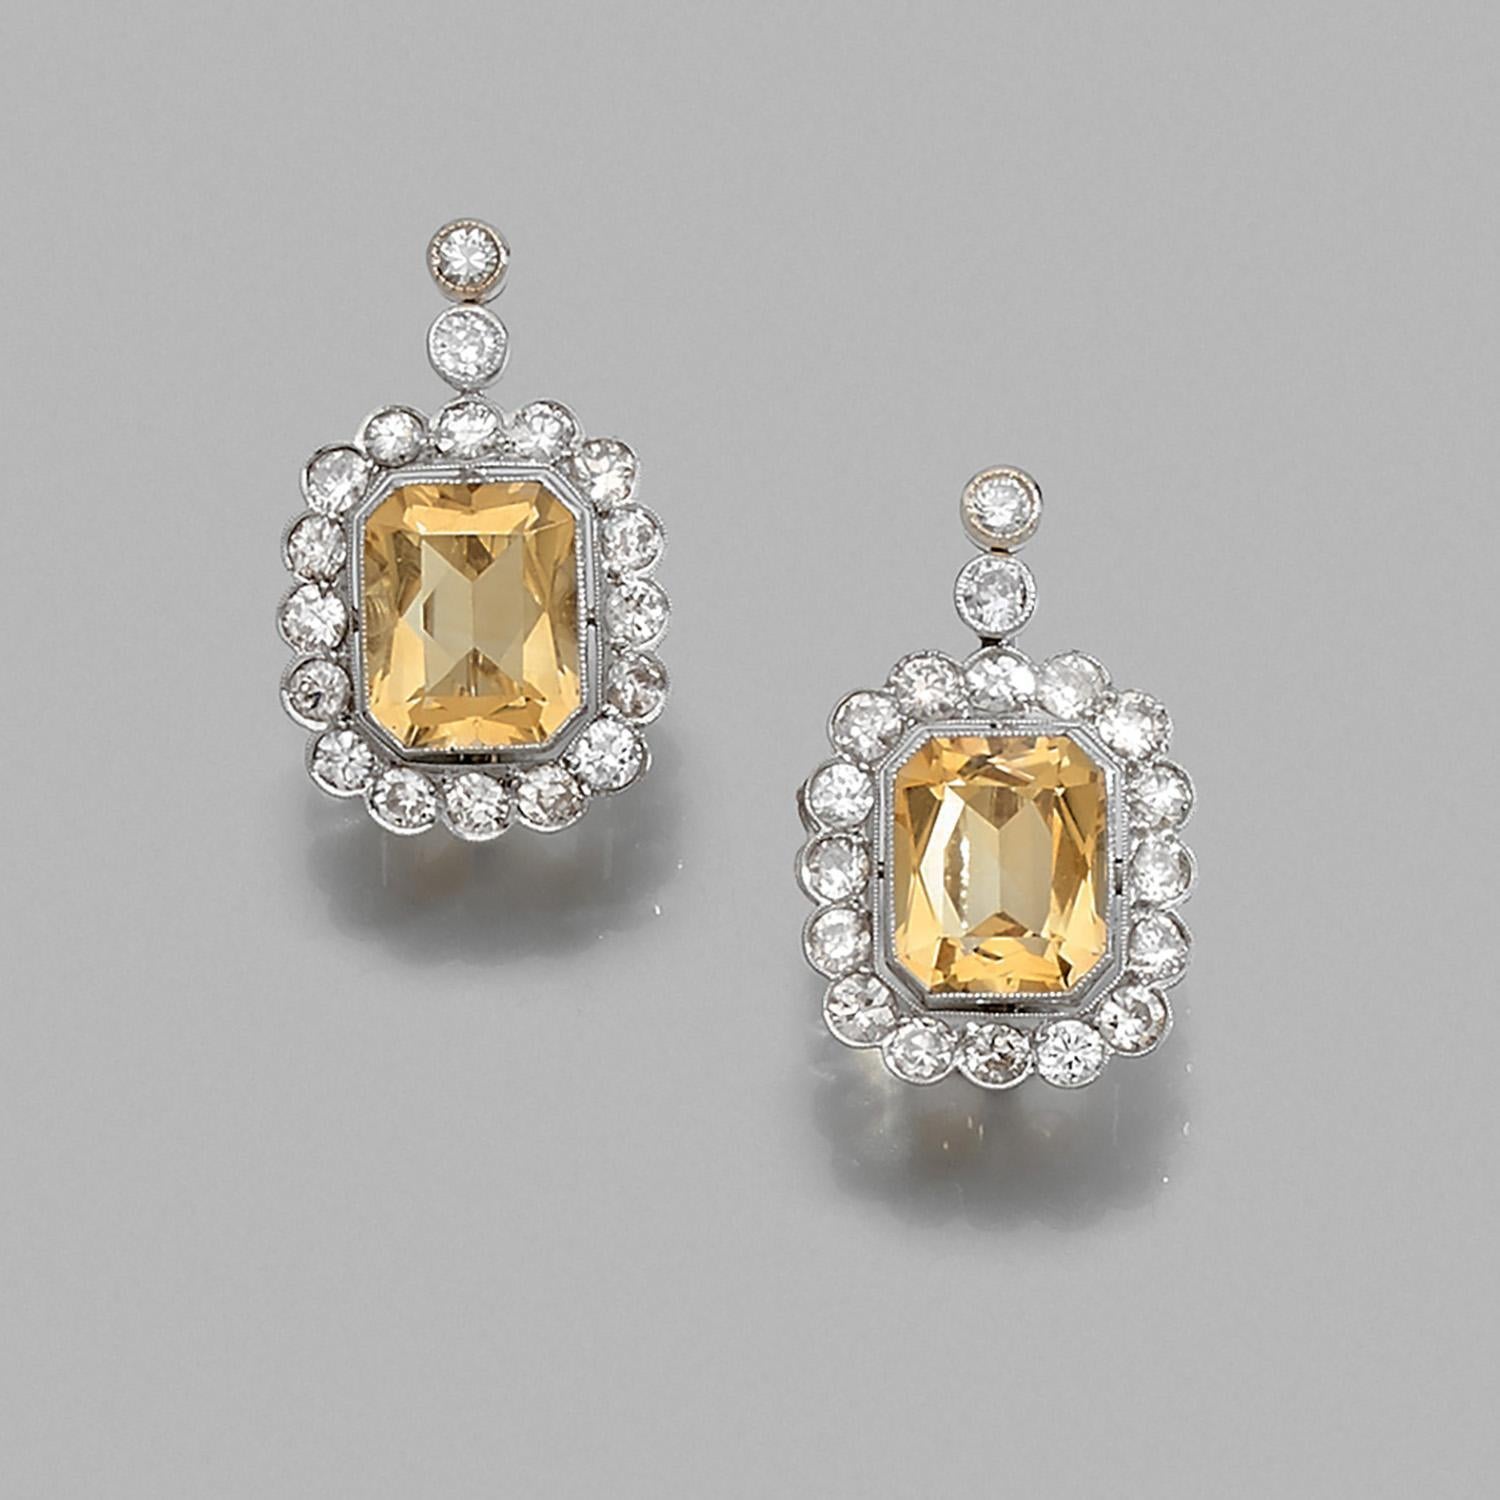 1920 earrings